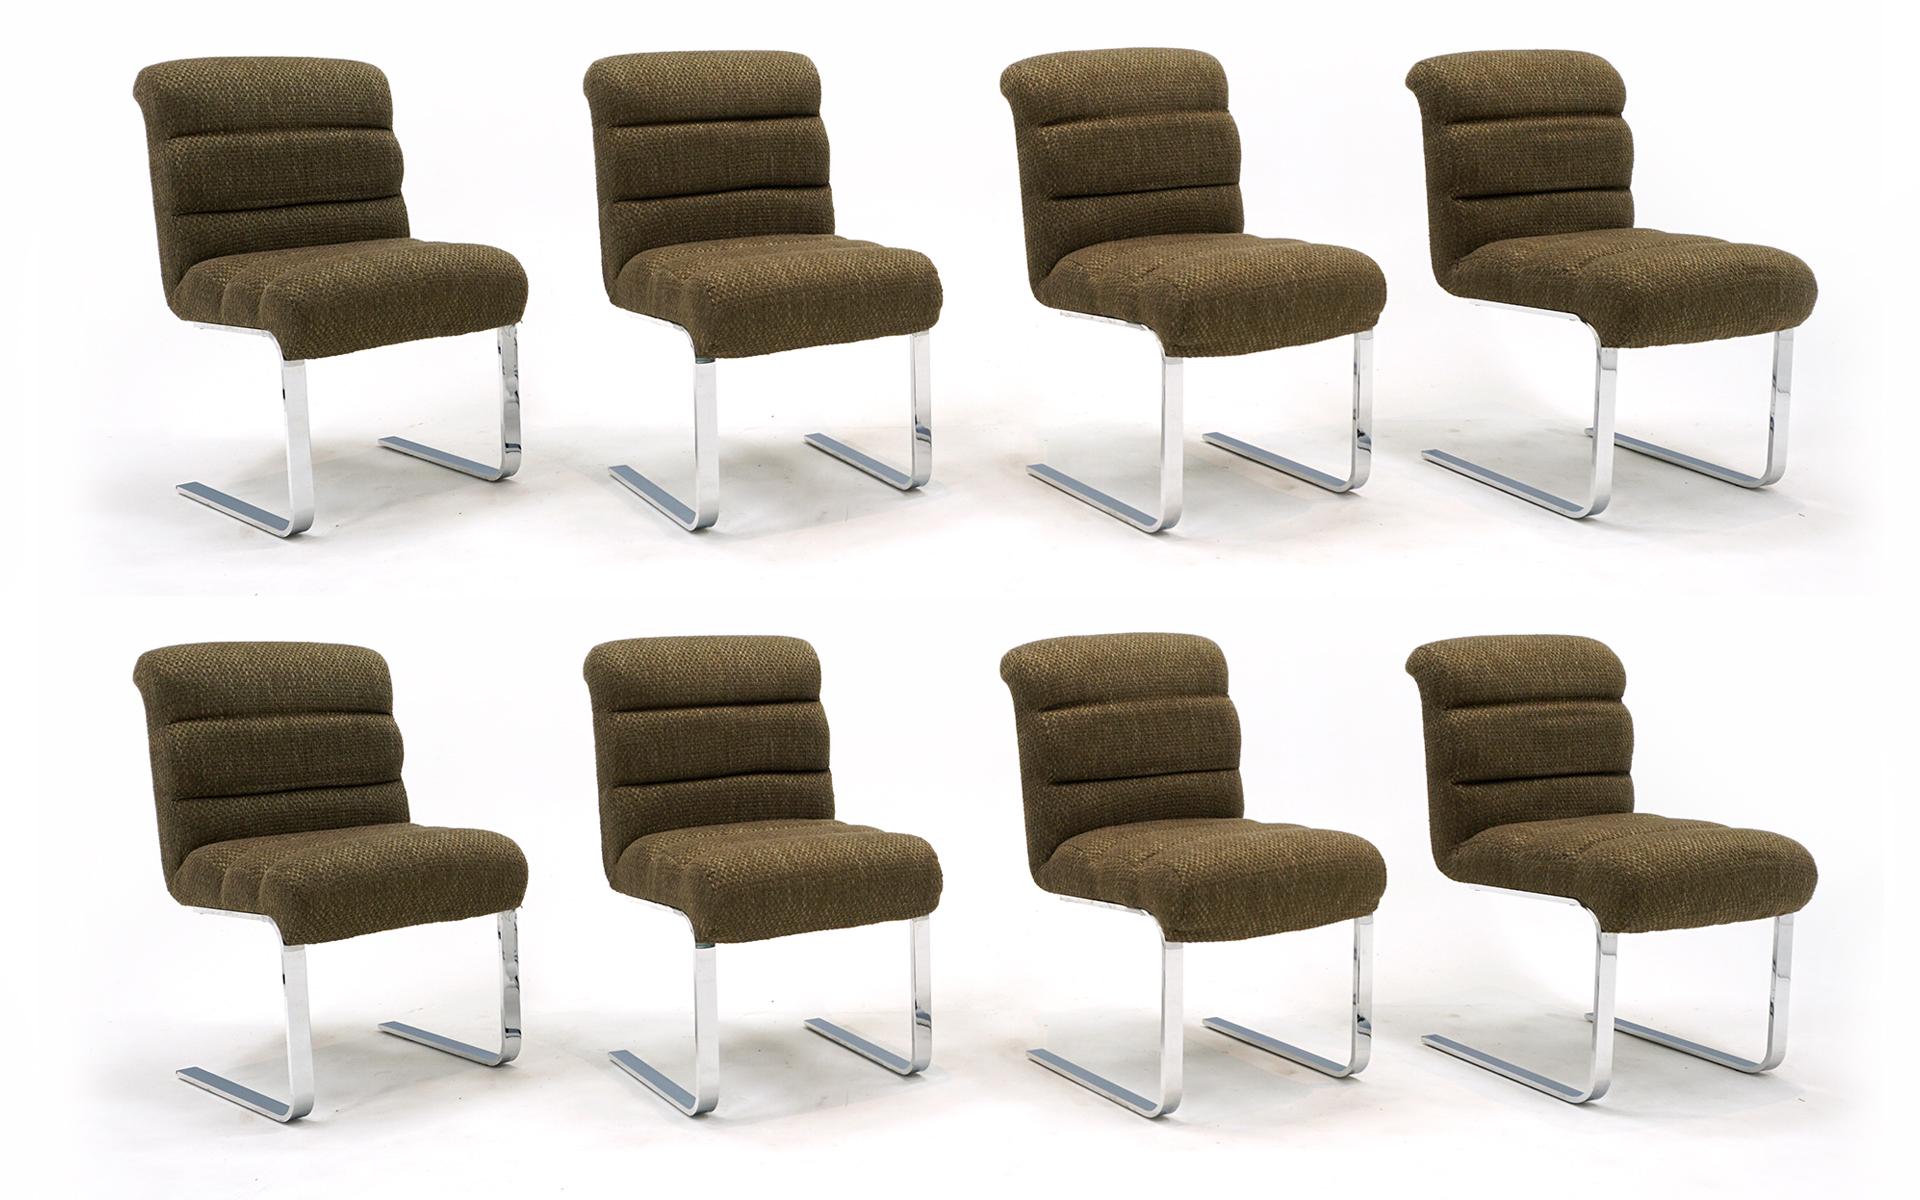 Satz von 8 Esszimmerstühlen aus The Pace Collection'S, 1970er Jahre.  Weiche, bequeme Sitze und Rückenlehnen mit freitragendem Rahmen, der beim Sitzen eine leichte Biegung ermöglicht.  Sehr guter Originalzustand.  Signiert mit dem Label der Pace